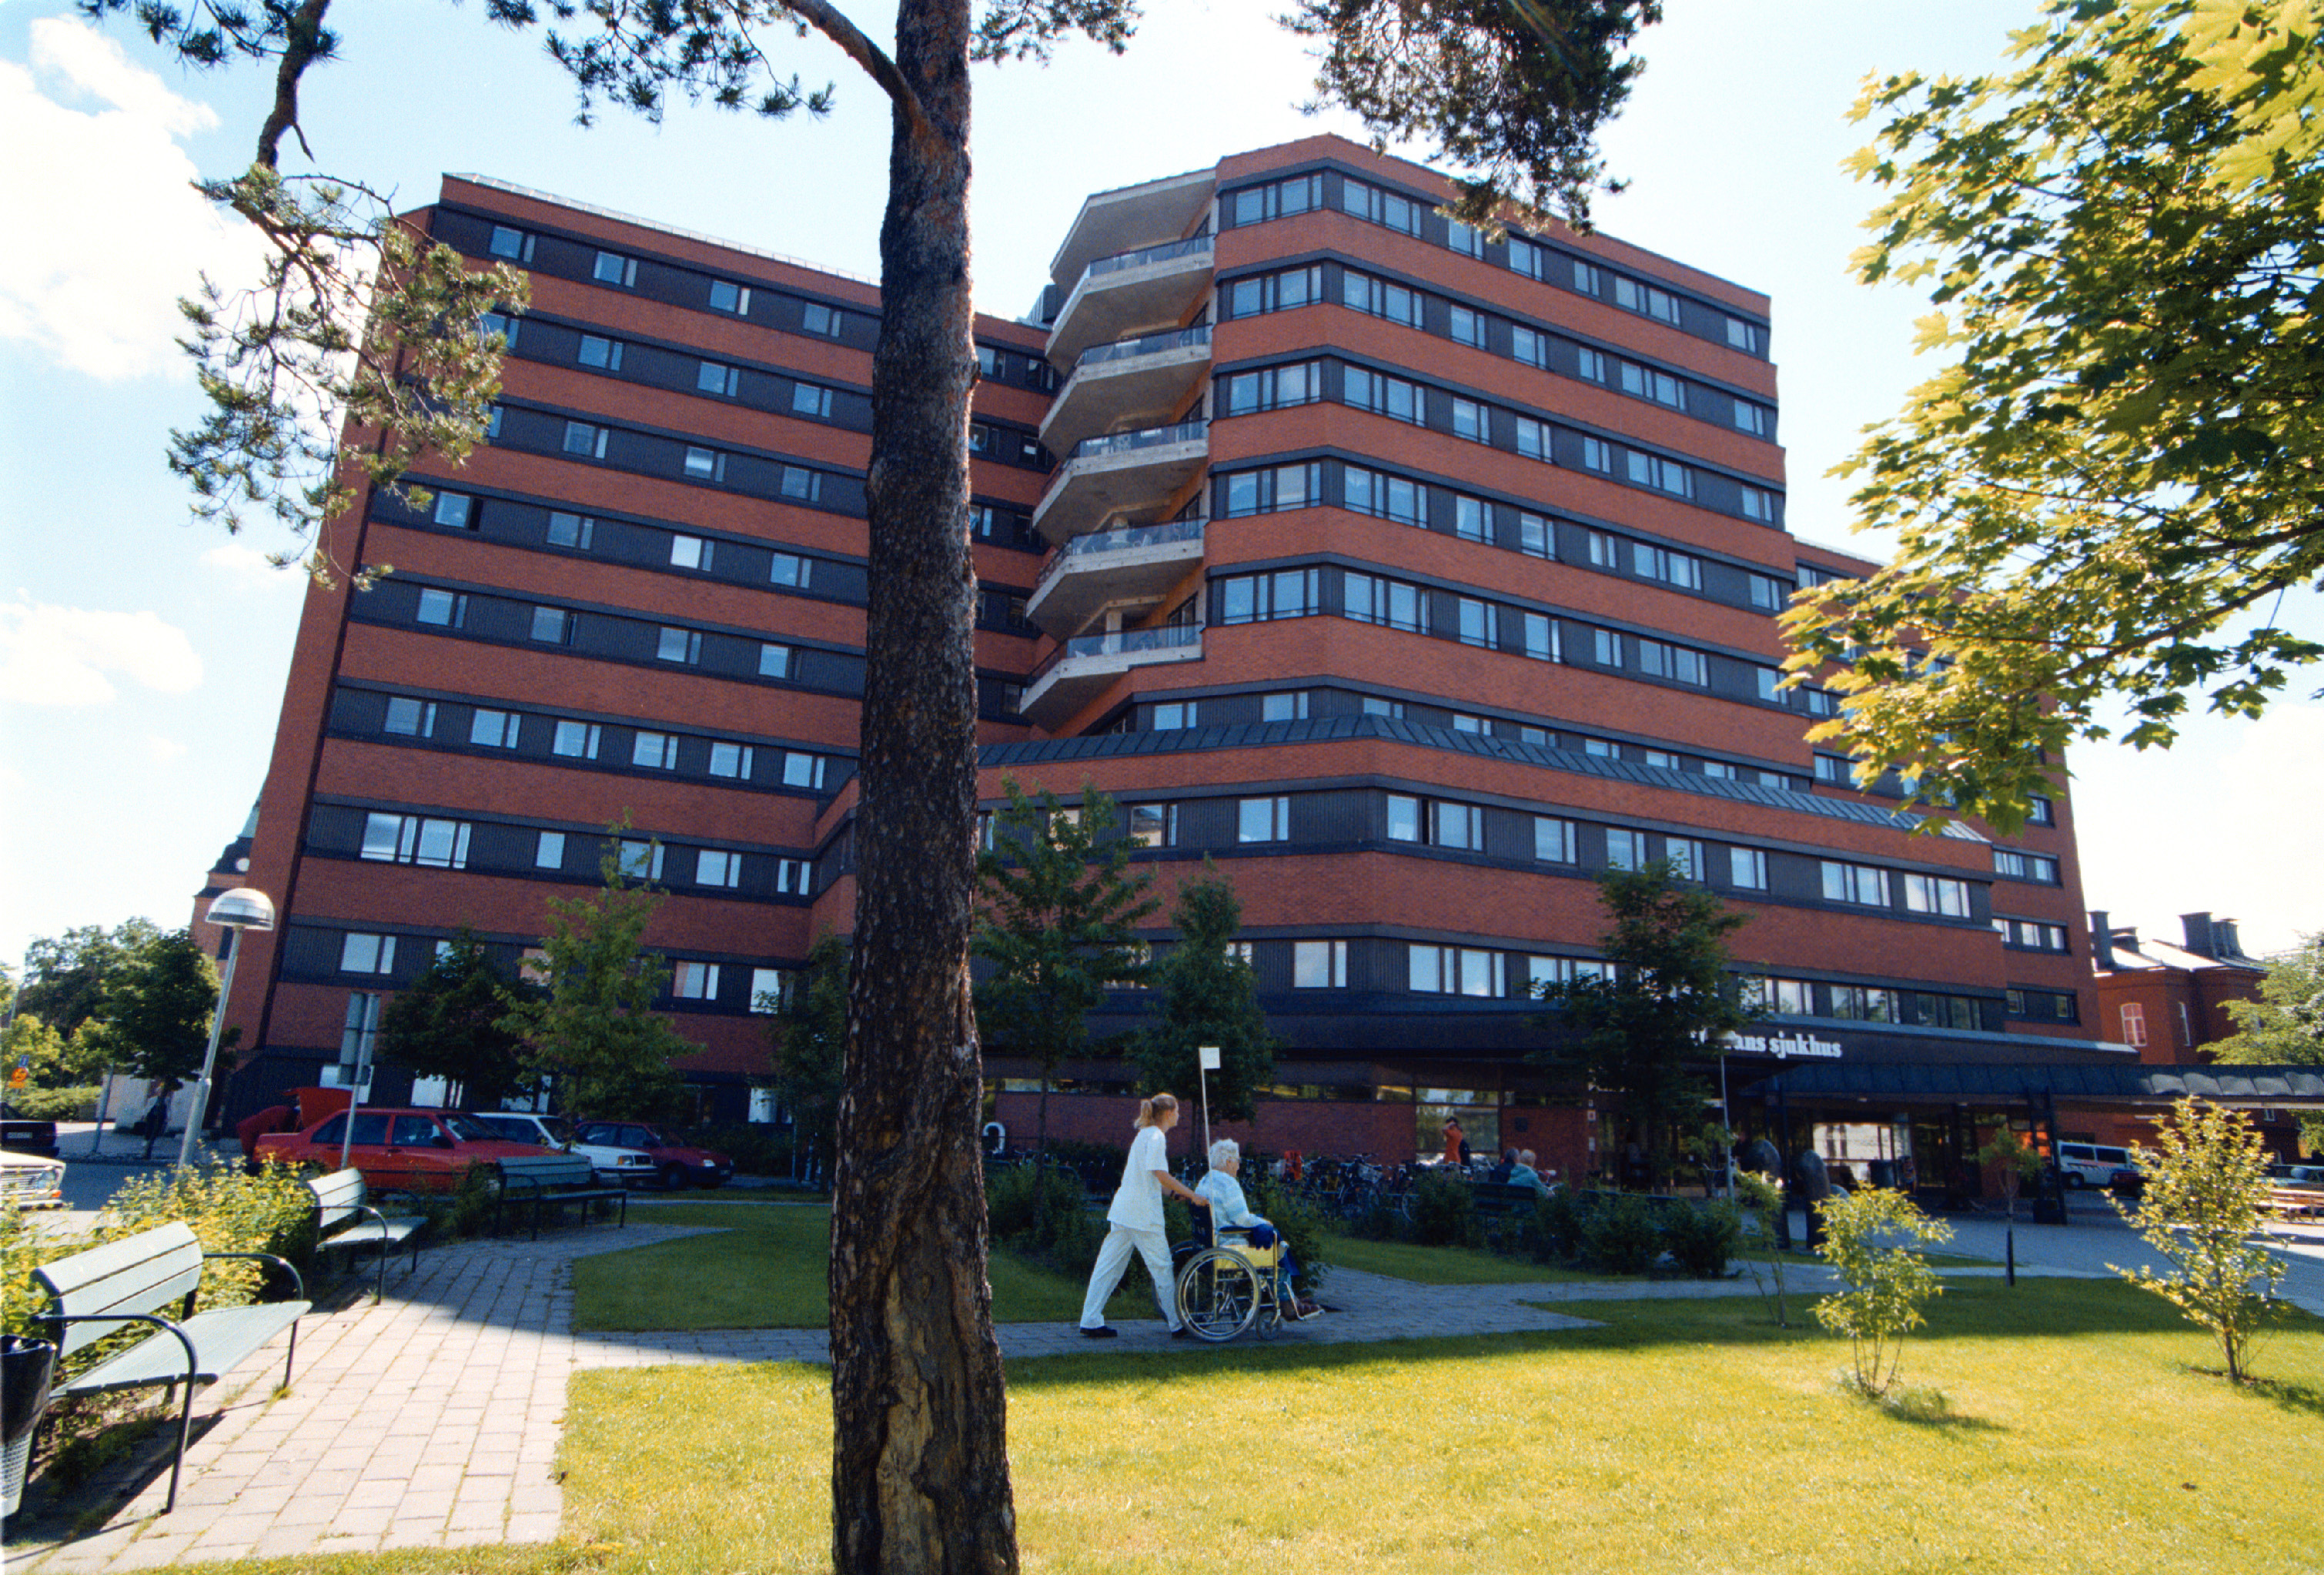 St Görans sjukhus blev på torsdagen skådeplatsen för en vild polisjakt av en beväpnad man.